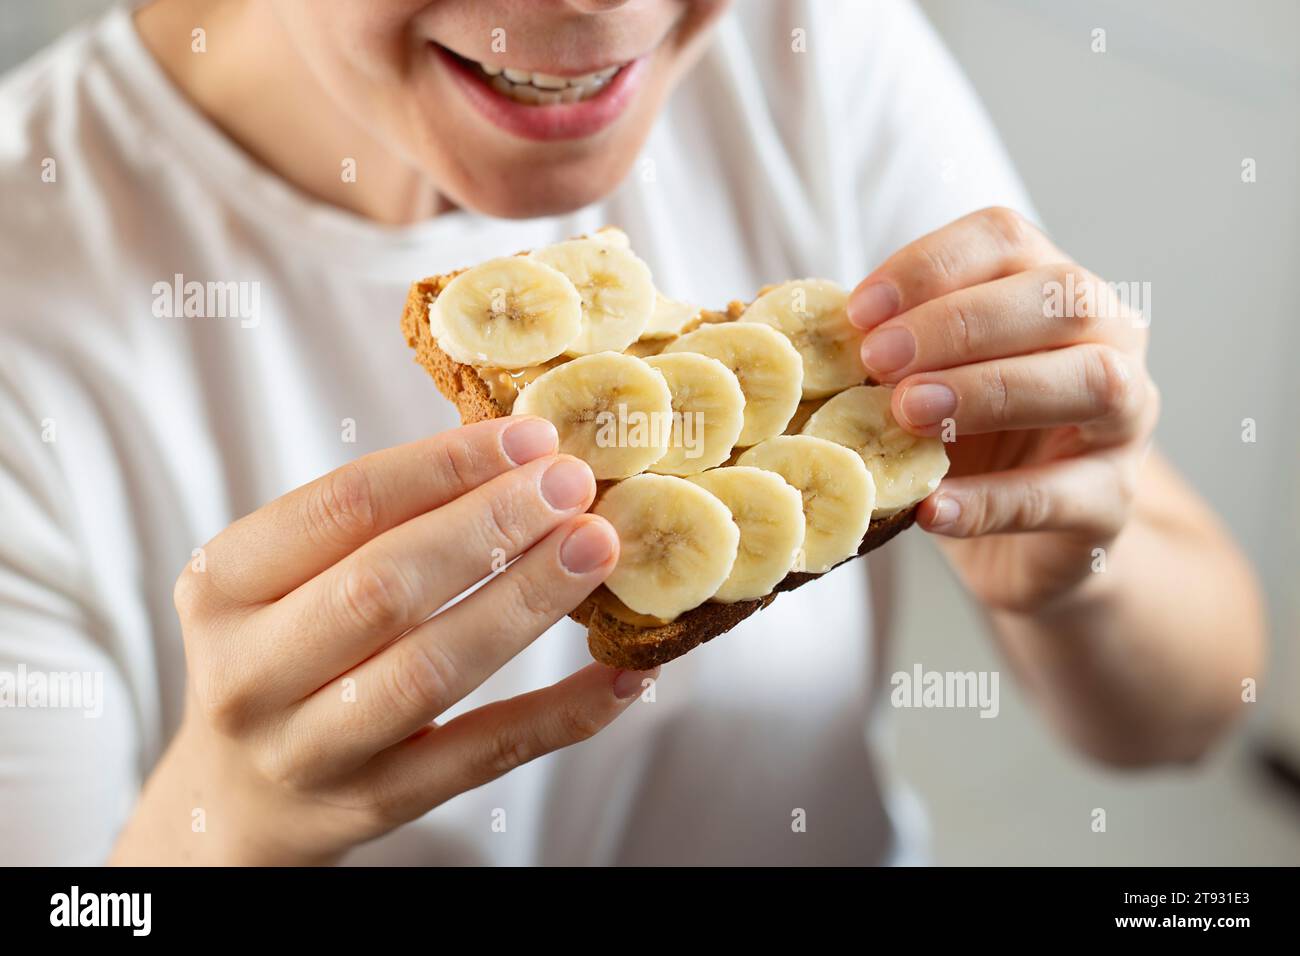 Manger un sandwich avec du beurre de cacahuète et de la banane. Concept de petit déjeuner américain. Banque D'Images